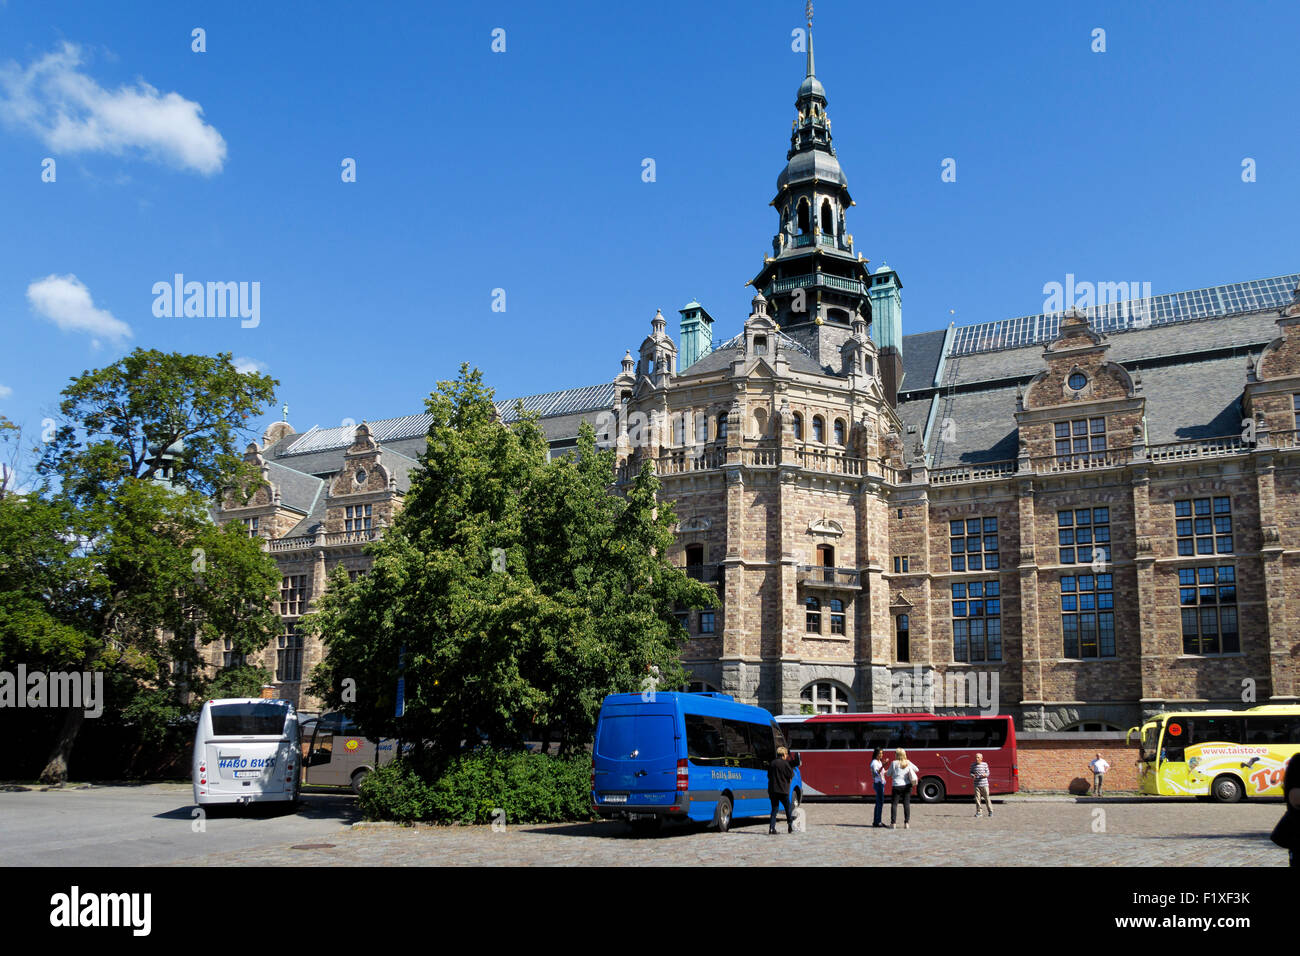 Der Tourbus steht auf der Rückseite des Nordischen Museums, auch Nordiska museet genannt, in Stockholm, Schweden, Europa Stockfoto